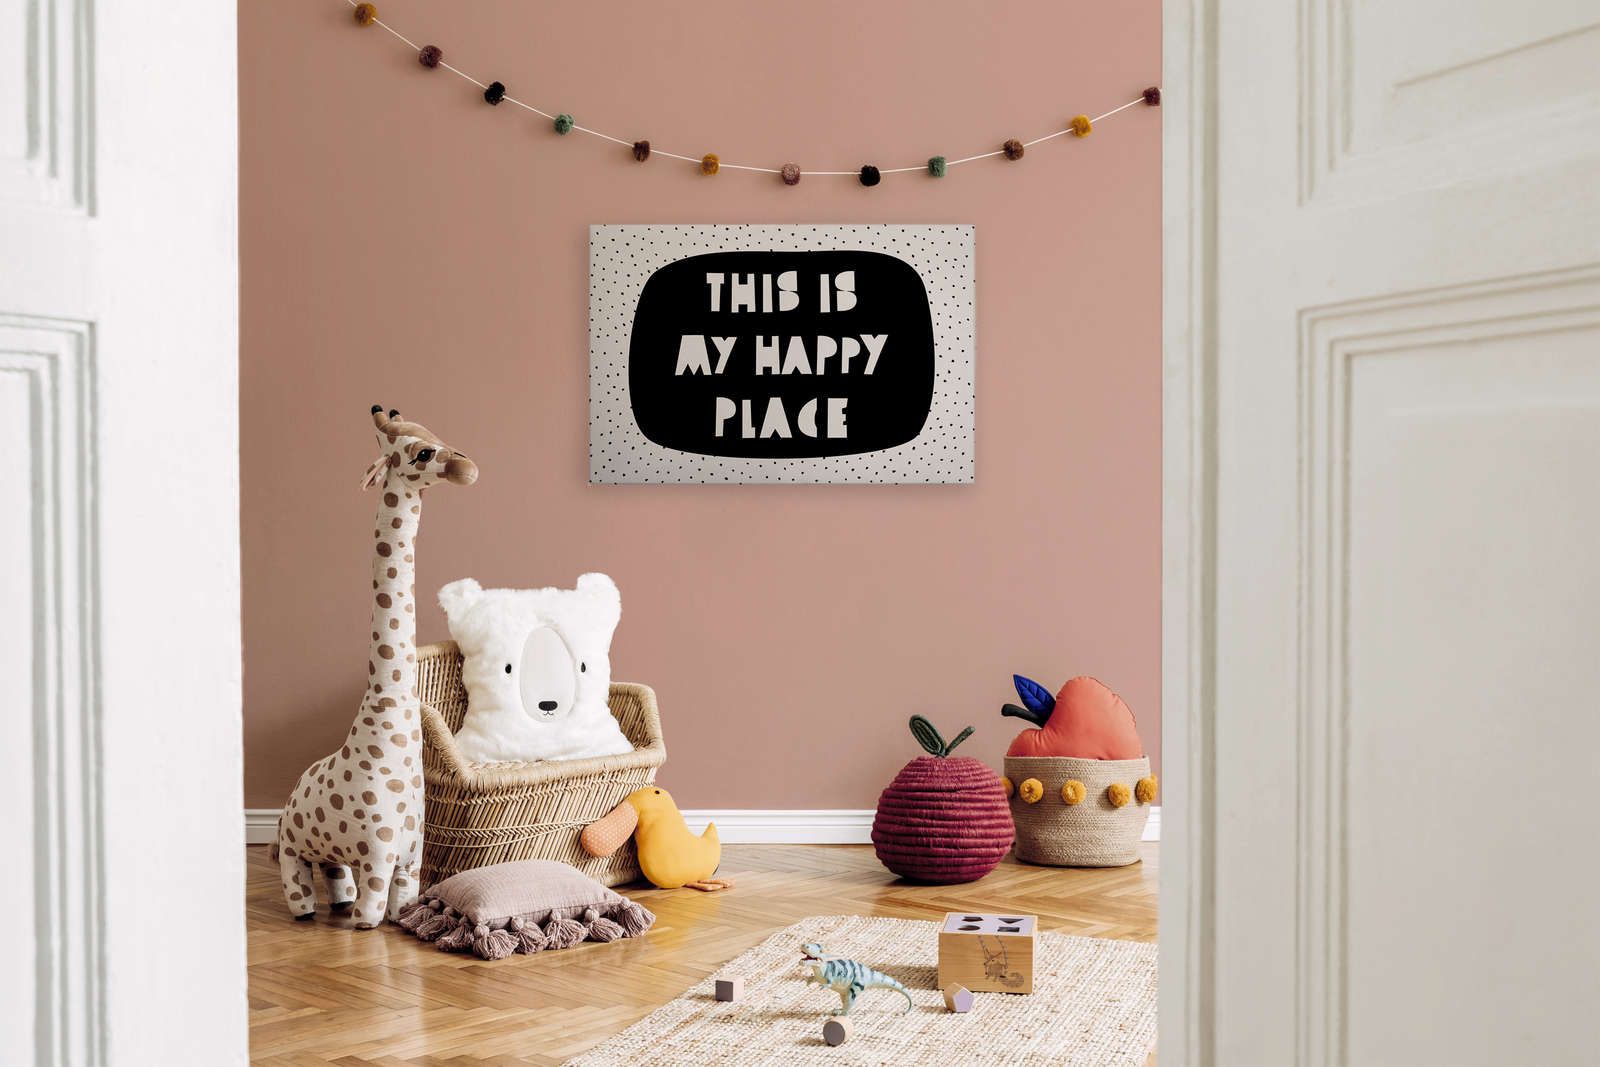             Leinwand fürs Kinderzimmer mit Schriftzug "This is my happy place" – 90 cm x 60 cm
        